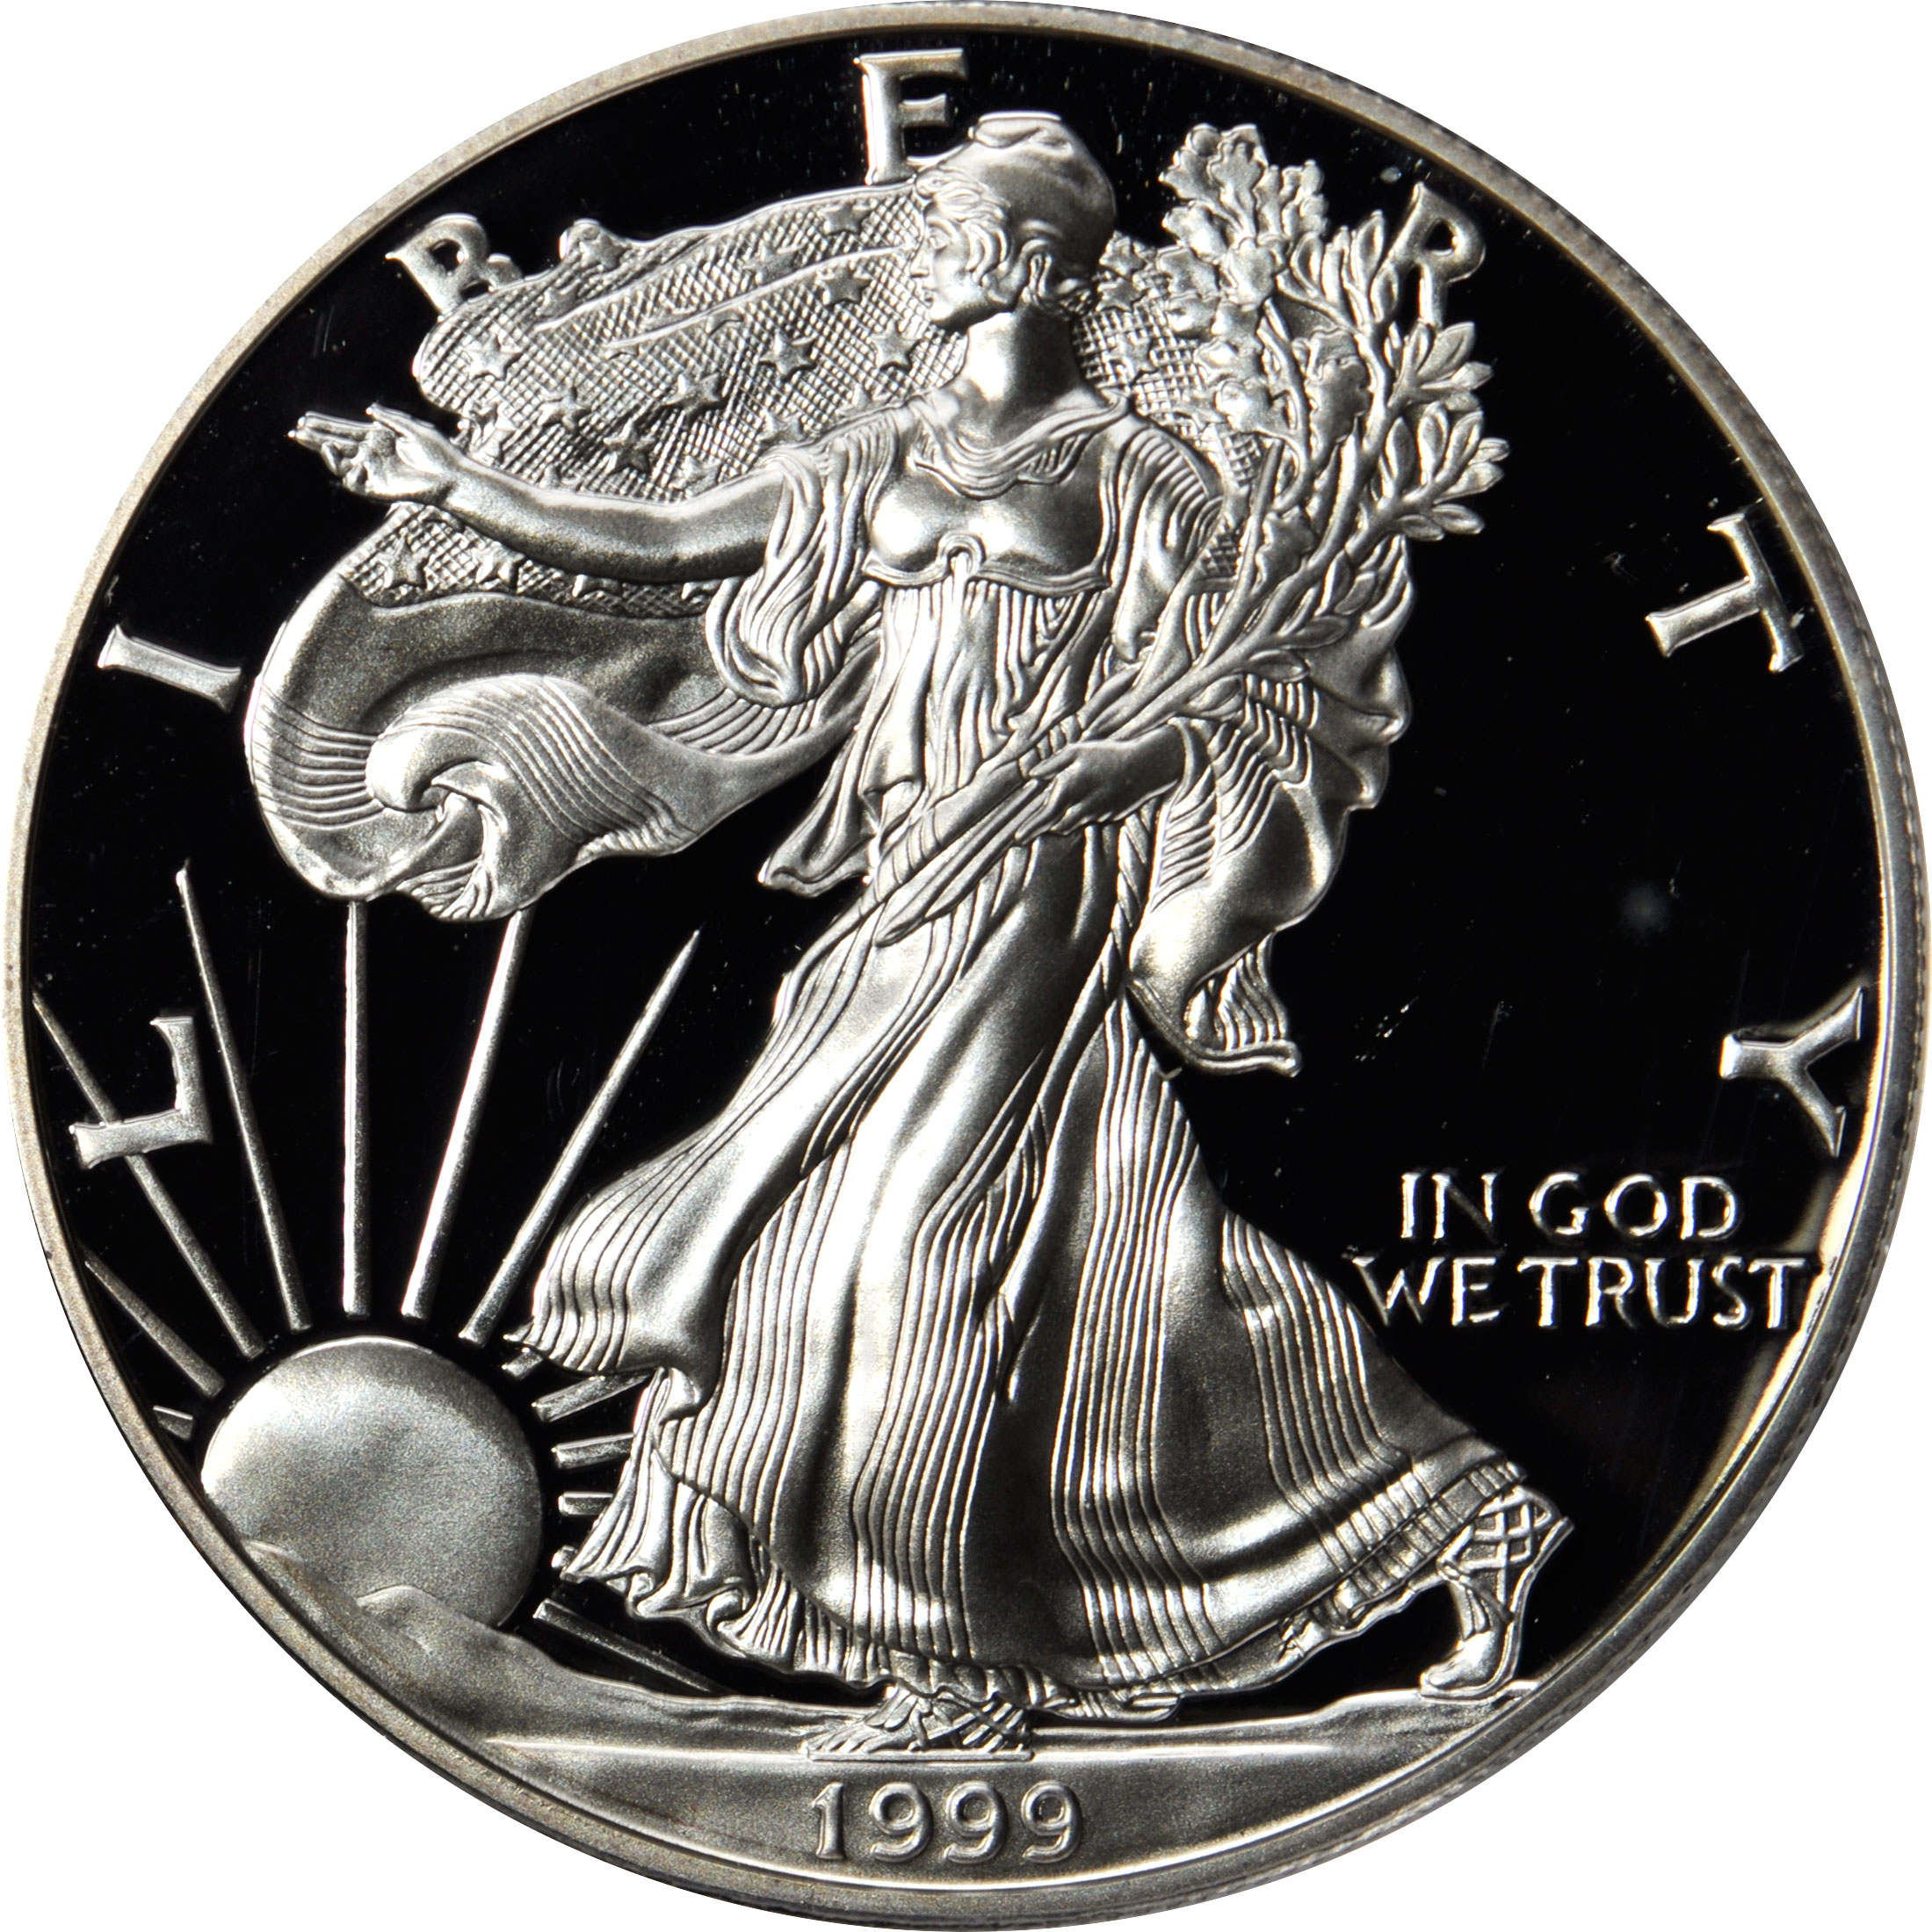 silver coin prices